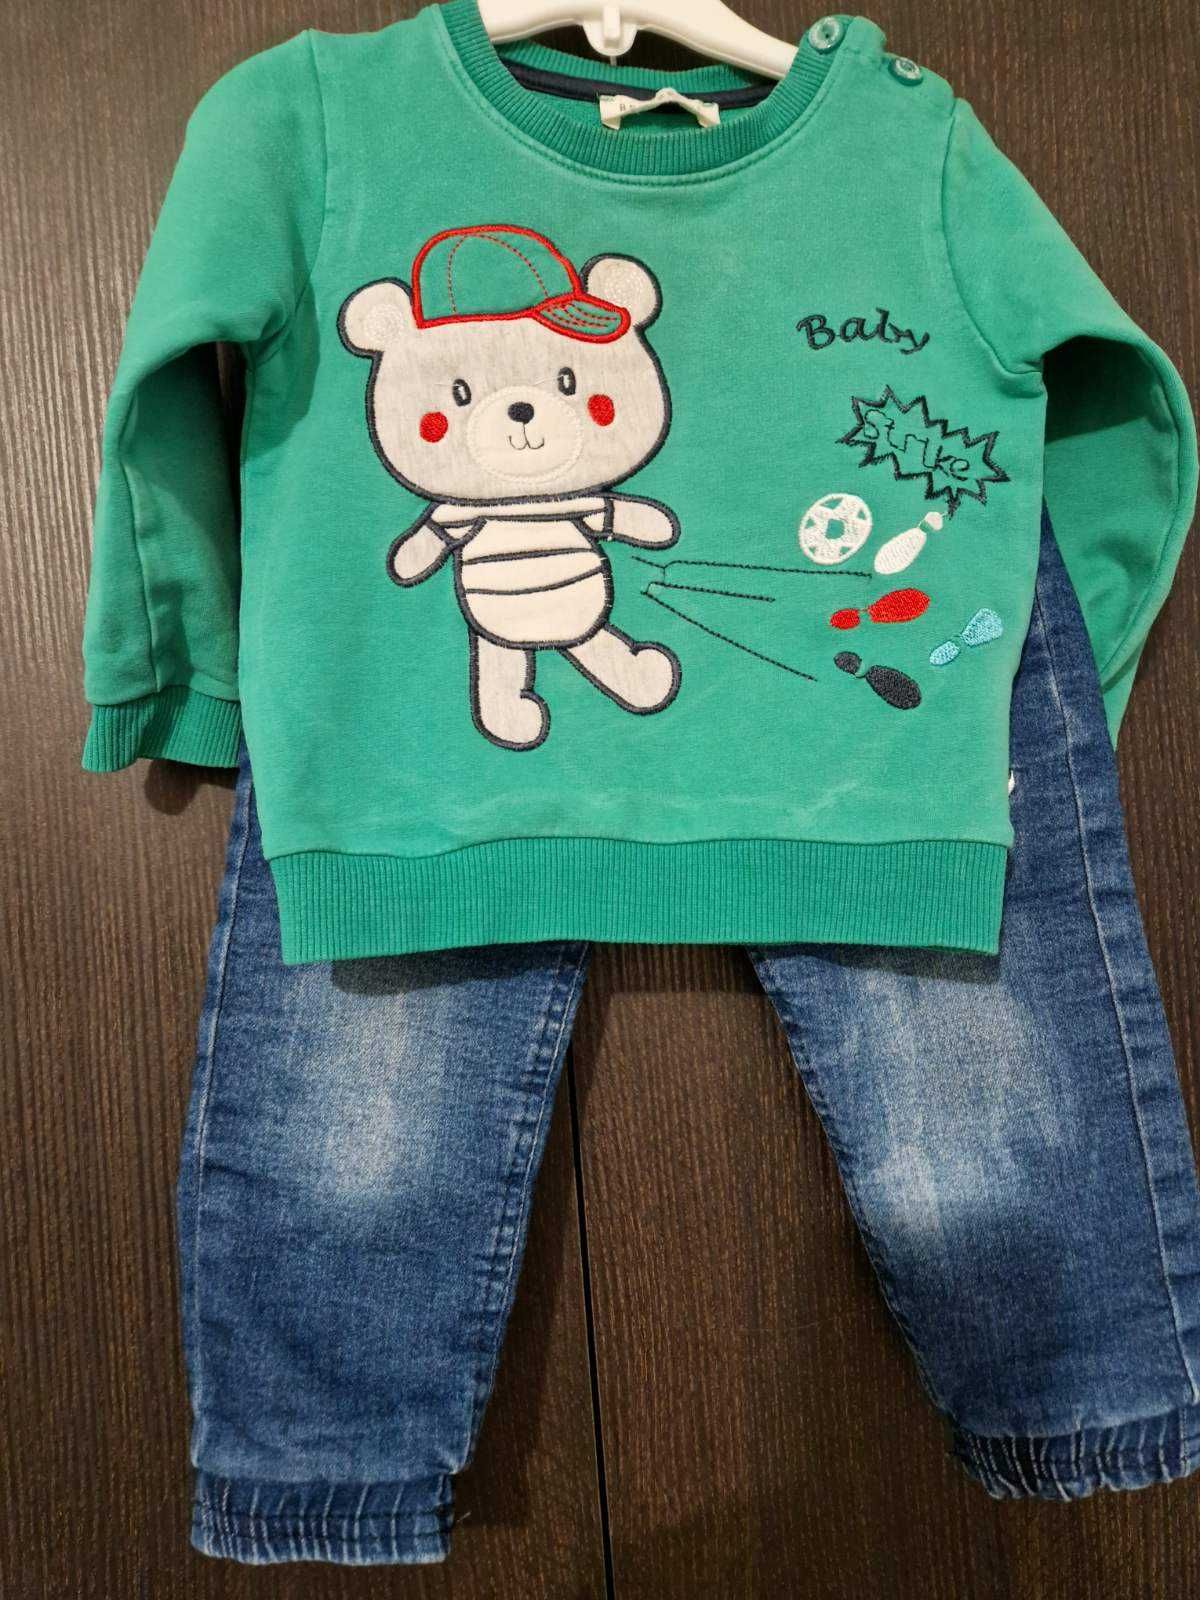 Теплые штаны и кофточка для ребенка (мальчика) до 2,5 лет.